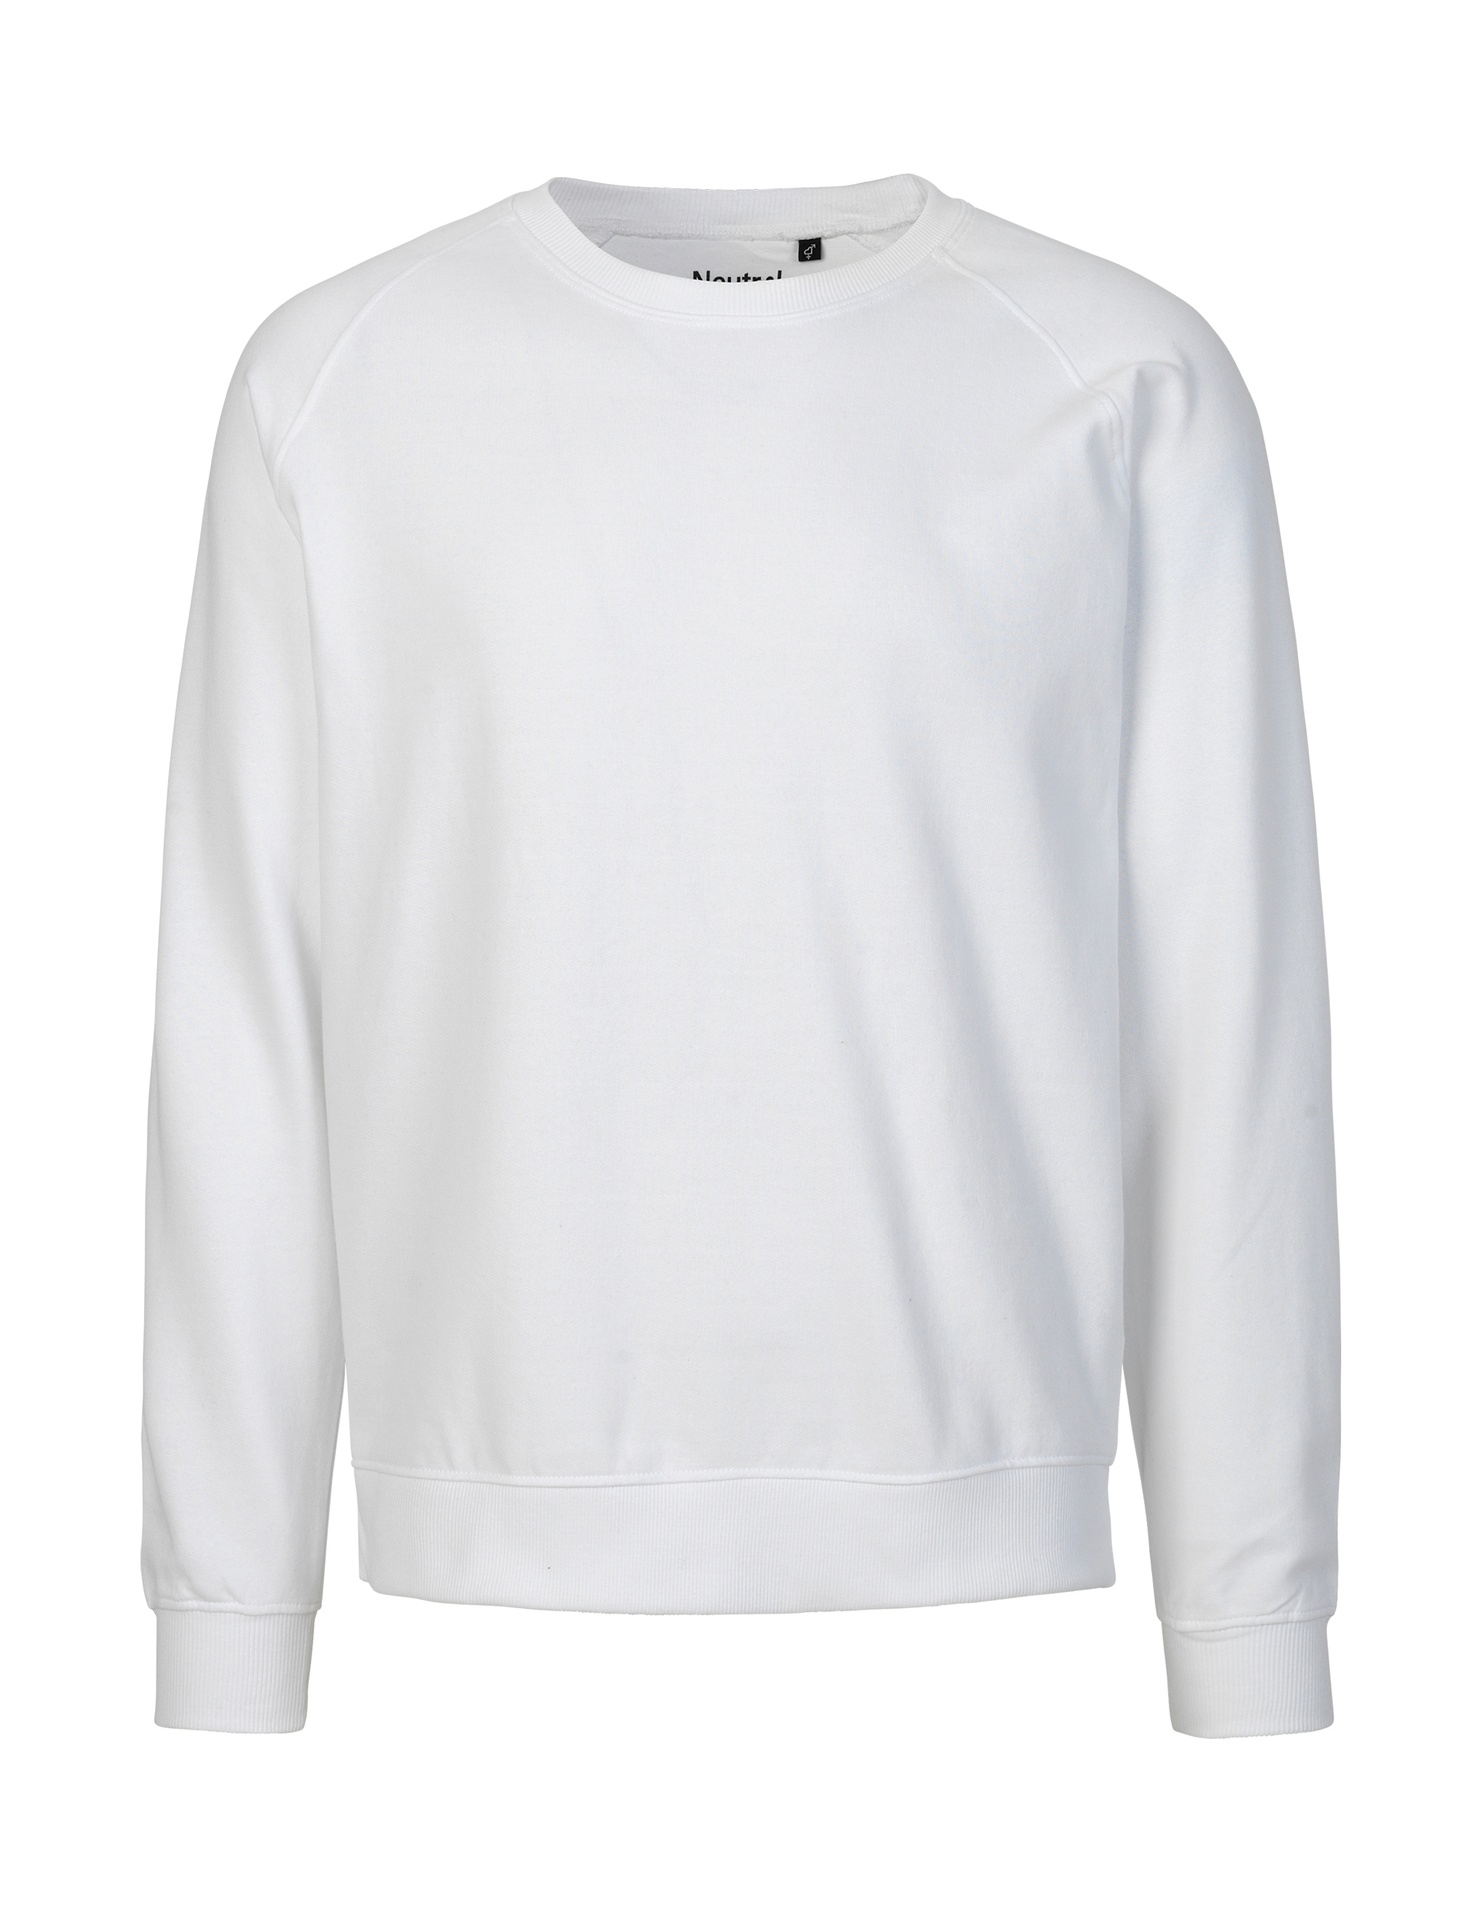 [PR/02659] Unisex Sweatshirt (White 01, 4XL)